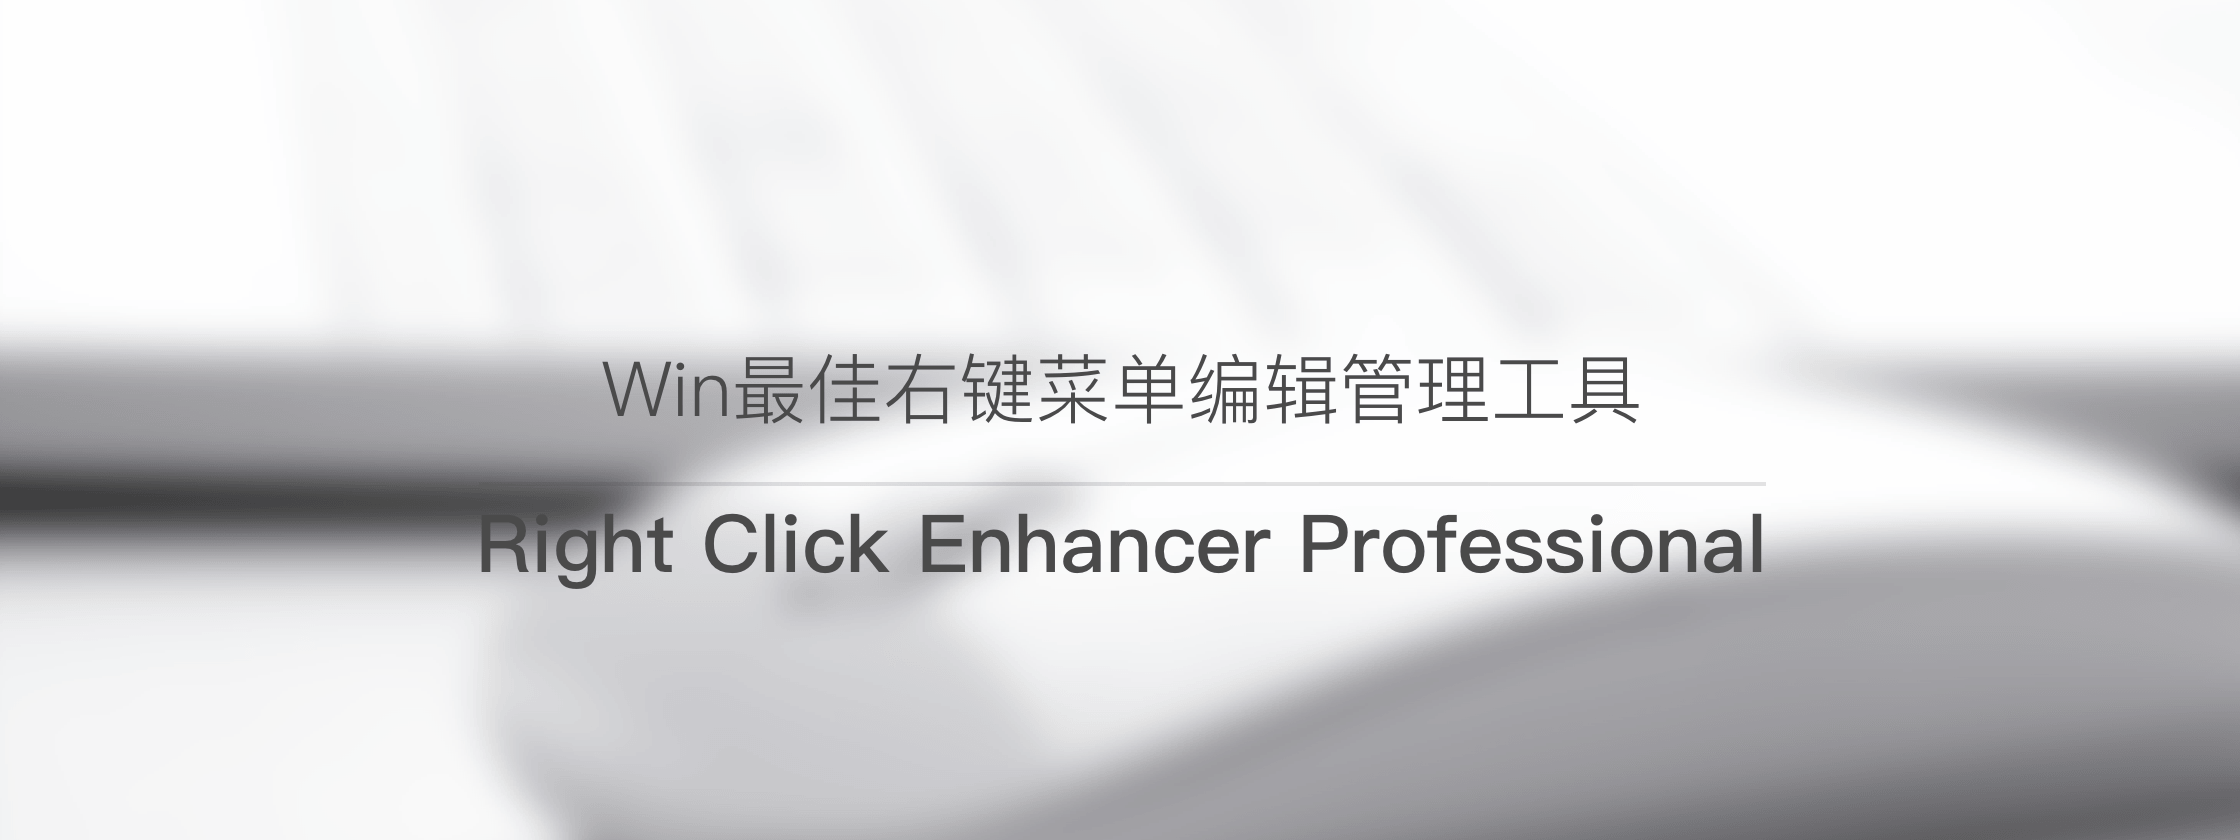 正版 Right Click Enhancer - 右键菜单编辑管理工具软件